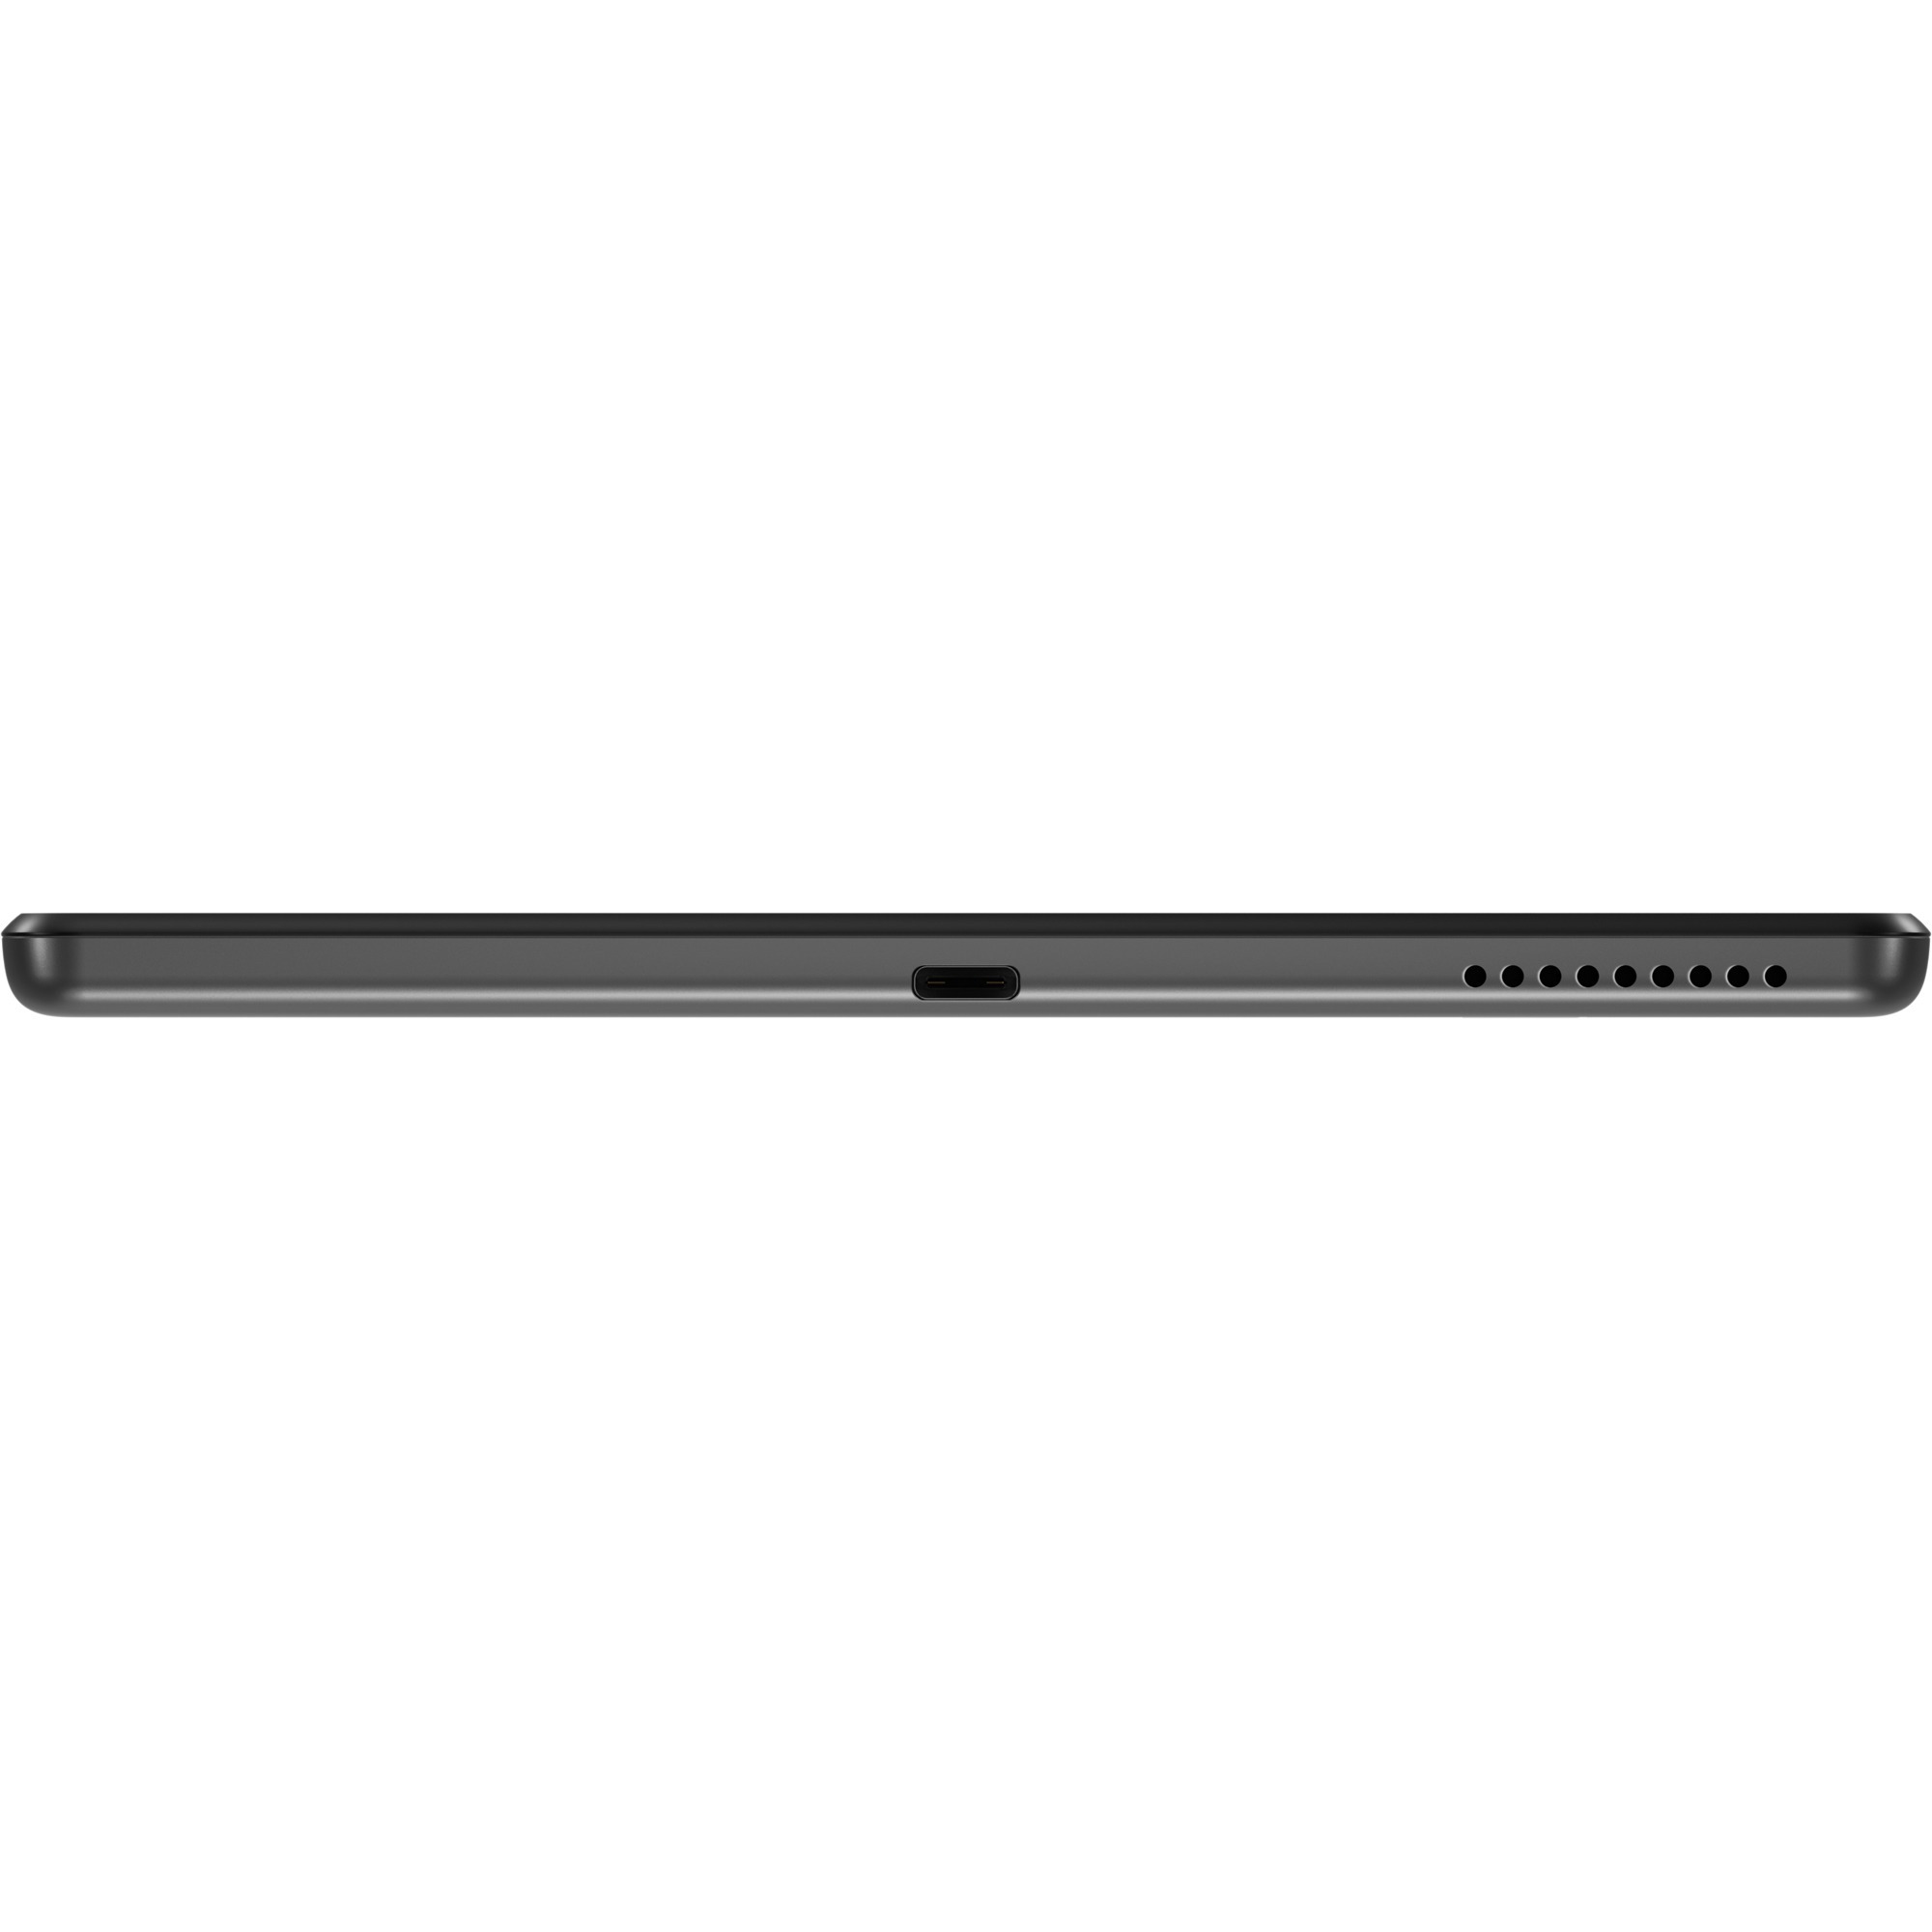 Lenovo Tab M10 FHD Plus (2nd Gen) TB-X606F Tablet - 10.3